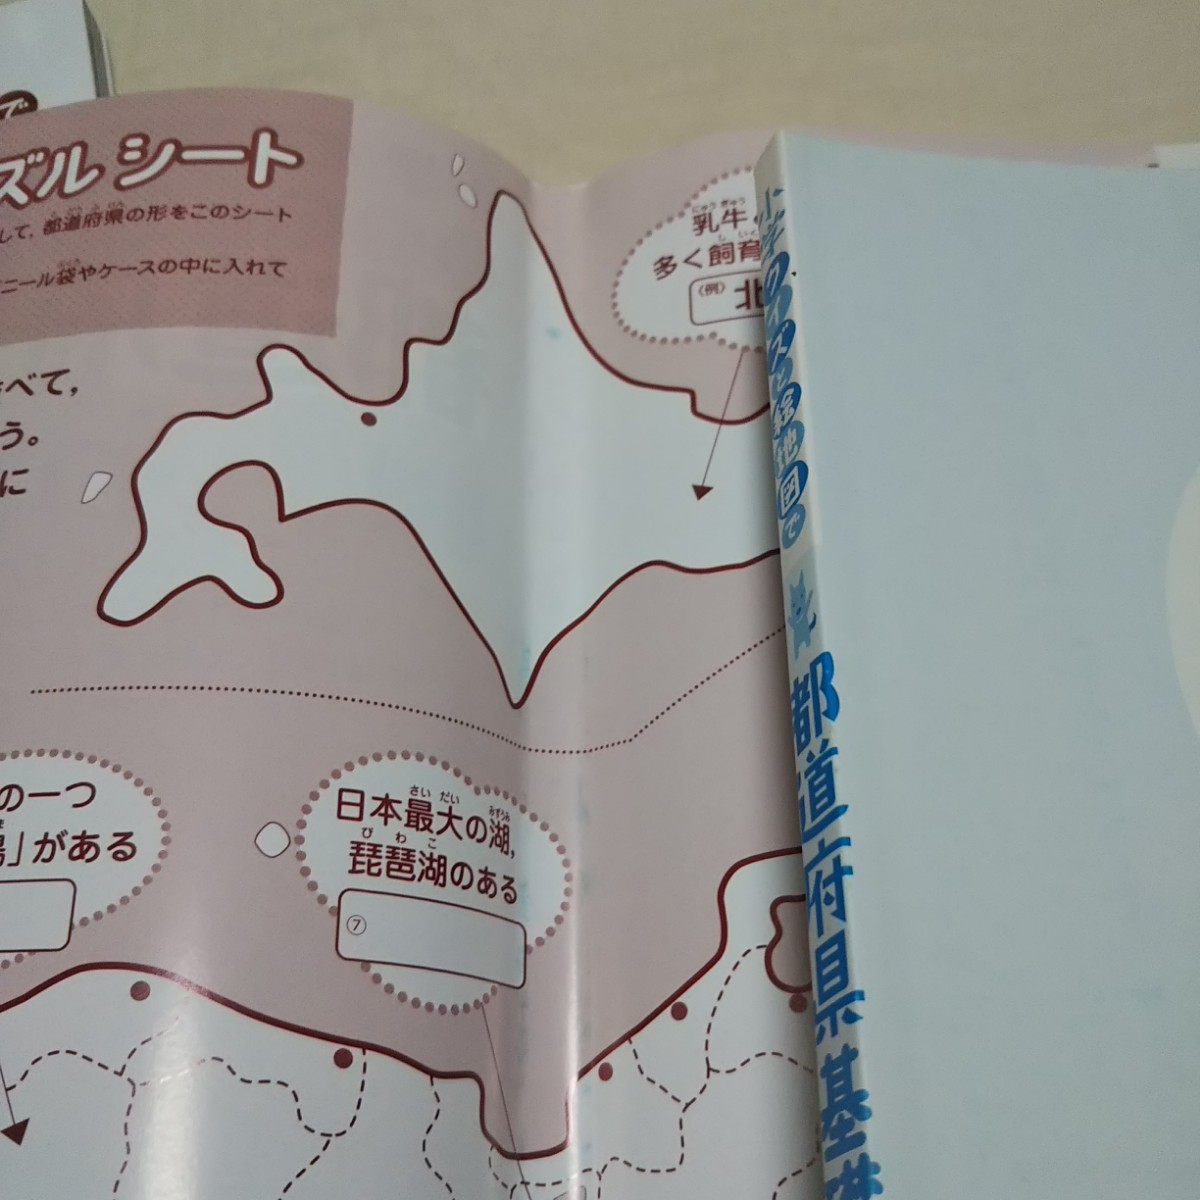 小学 クイズと絵地図で 基礎丸わかり 世界の国々 初めて学ぶ世界地理